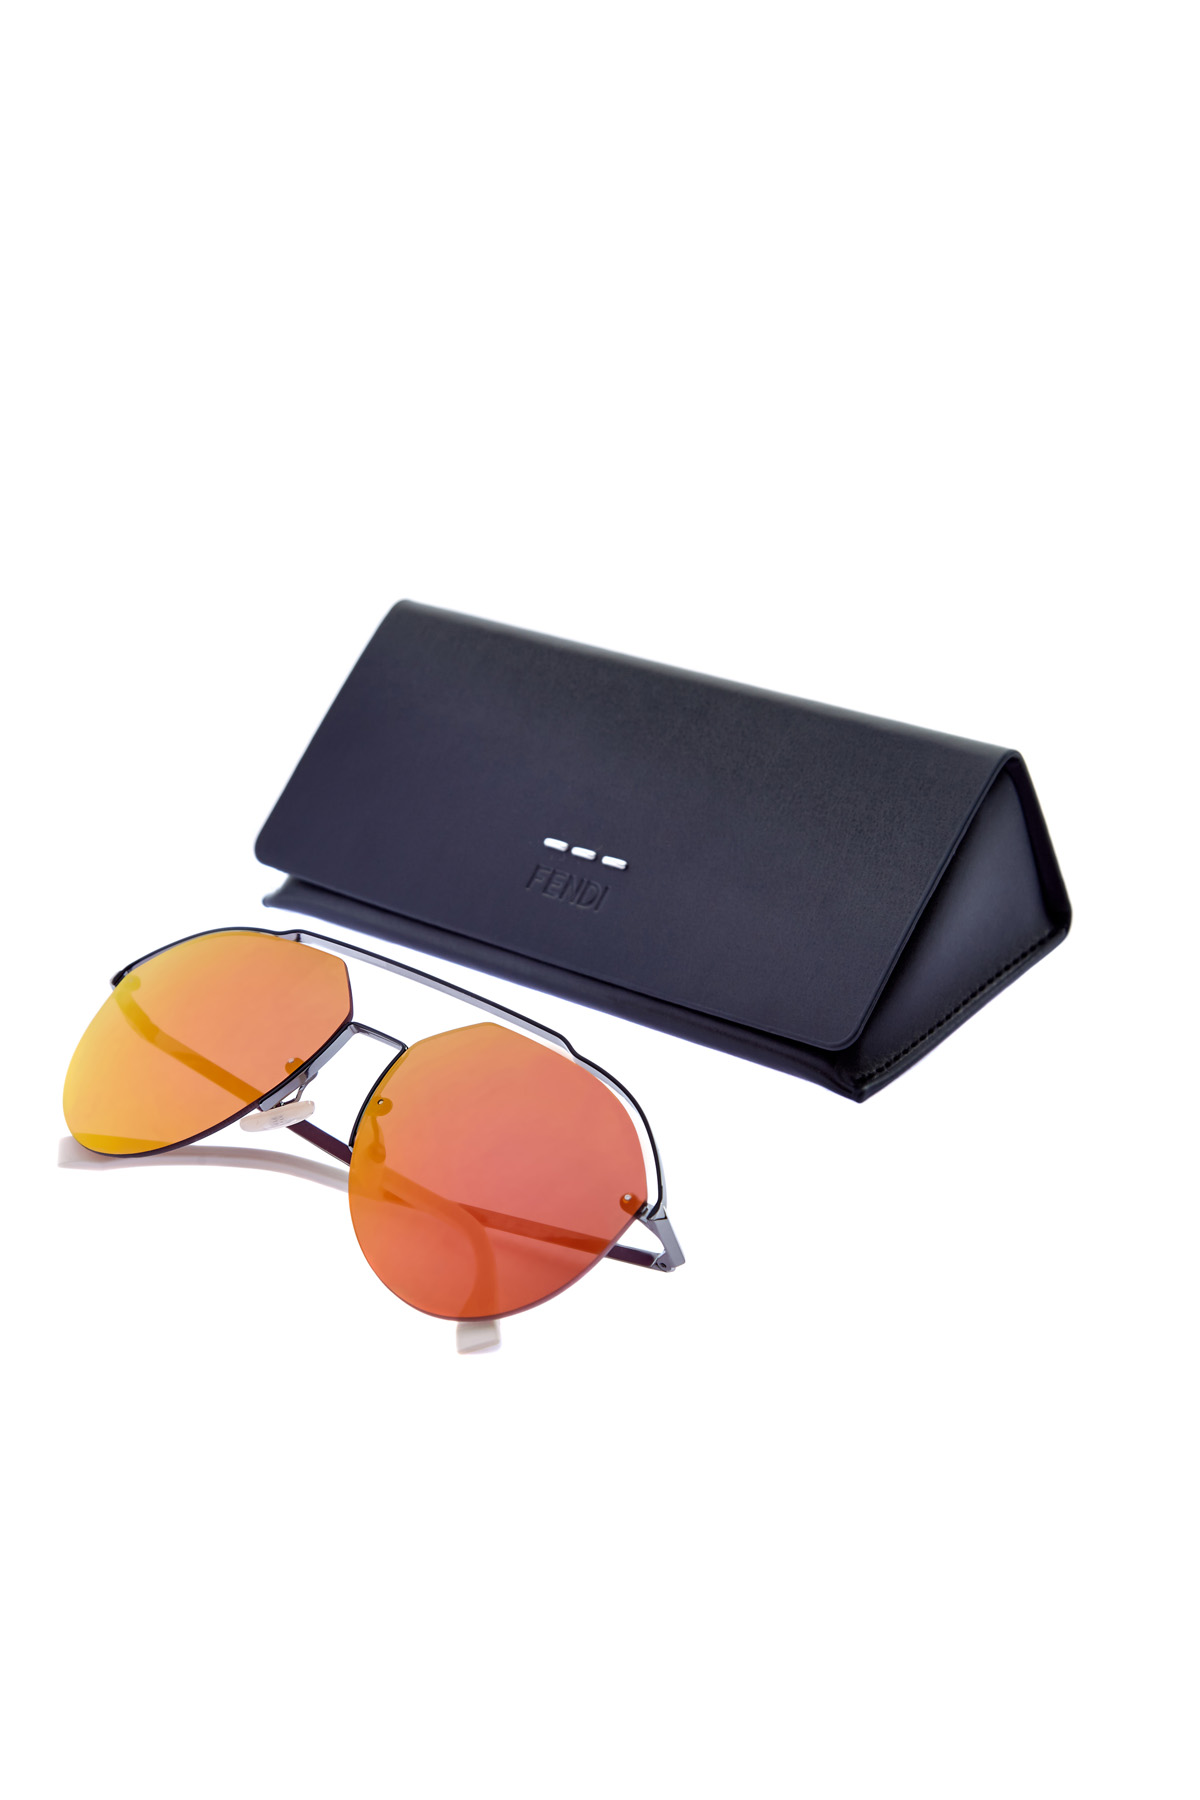 Очки-авиаторы в тонкой металлической оправе FENDI (sunglasses), цвет мульти, размер XS;S - фото 5